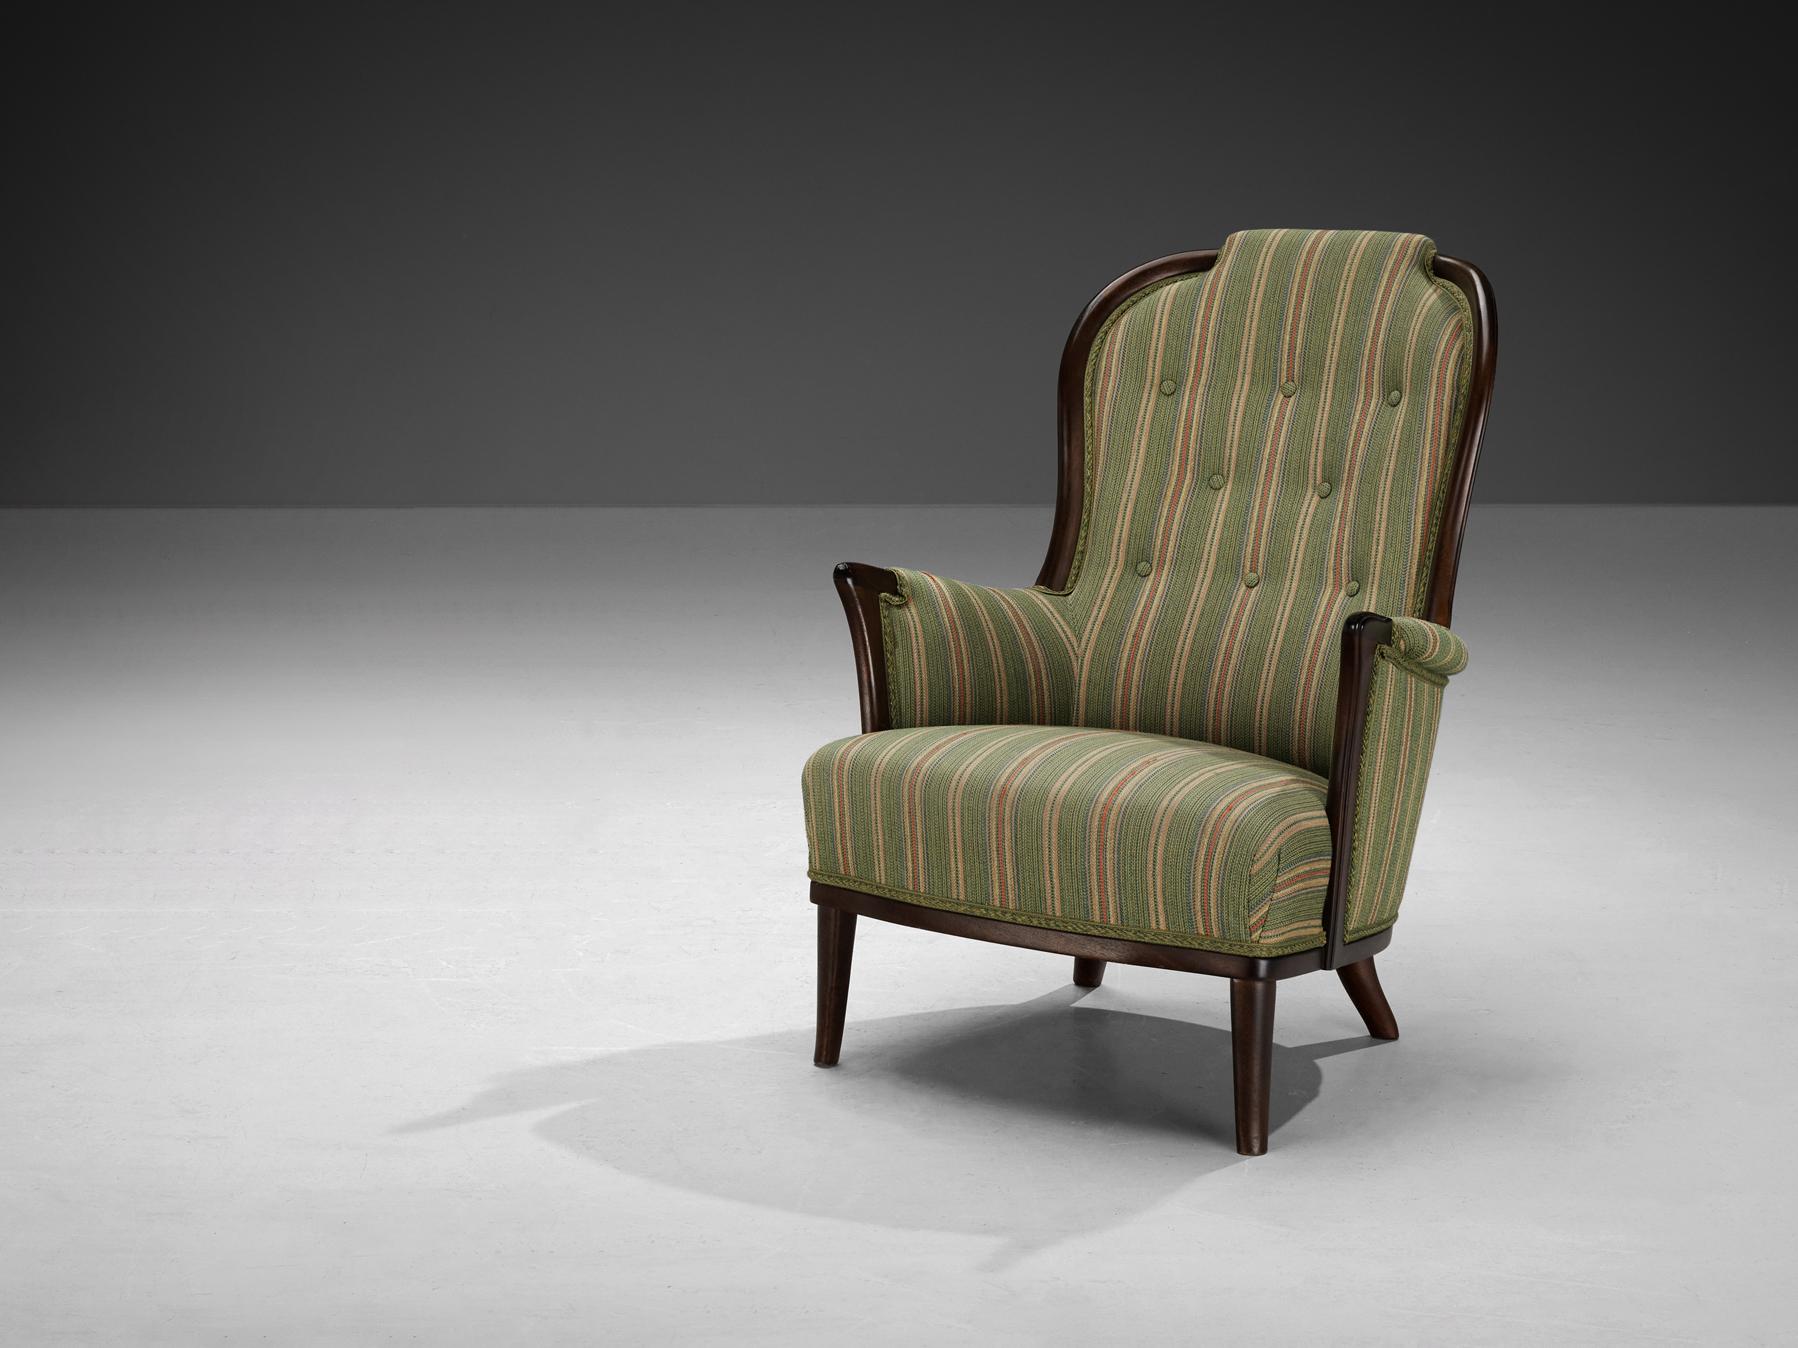 Carl Malmsten pour AB O.H. Sjögren, fauteuil, tissu, acajou, Tranås, Suède, 1987

Une magnifique chaise très bien conçue par Carl Malmsten. Ce fauteuil est tapissé dans le tissu d'origine principalement dans la couleur verte ornée de rayures